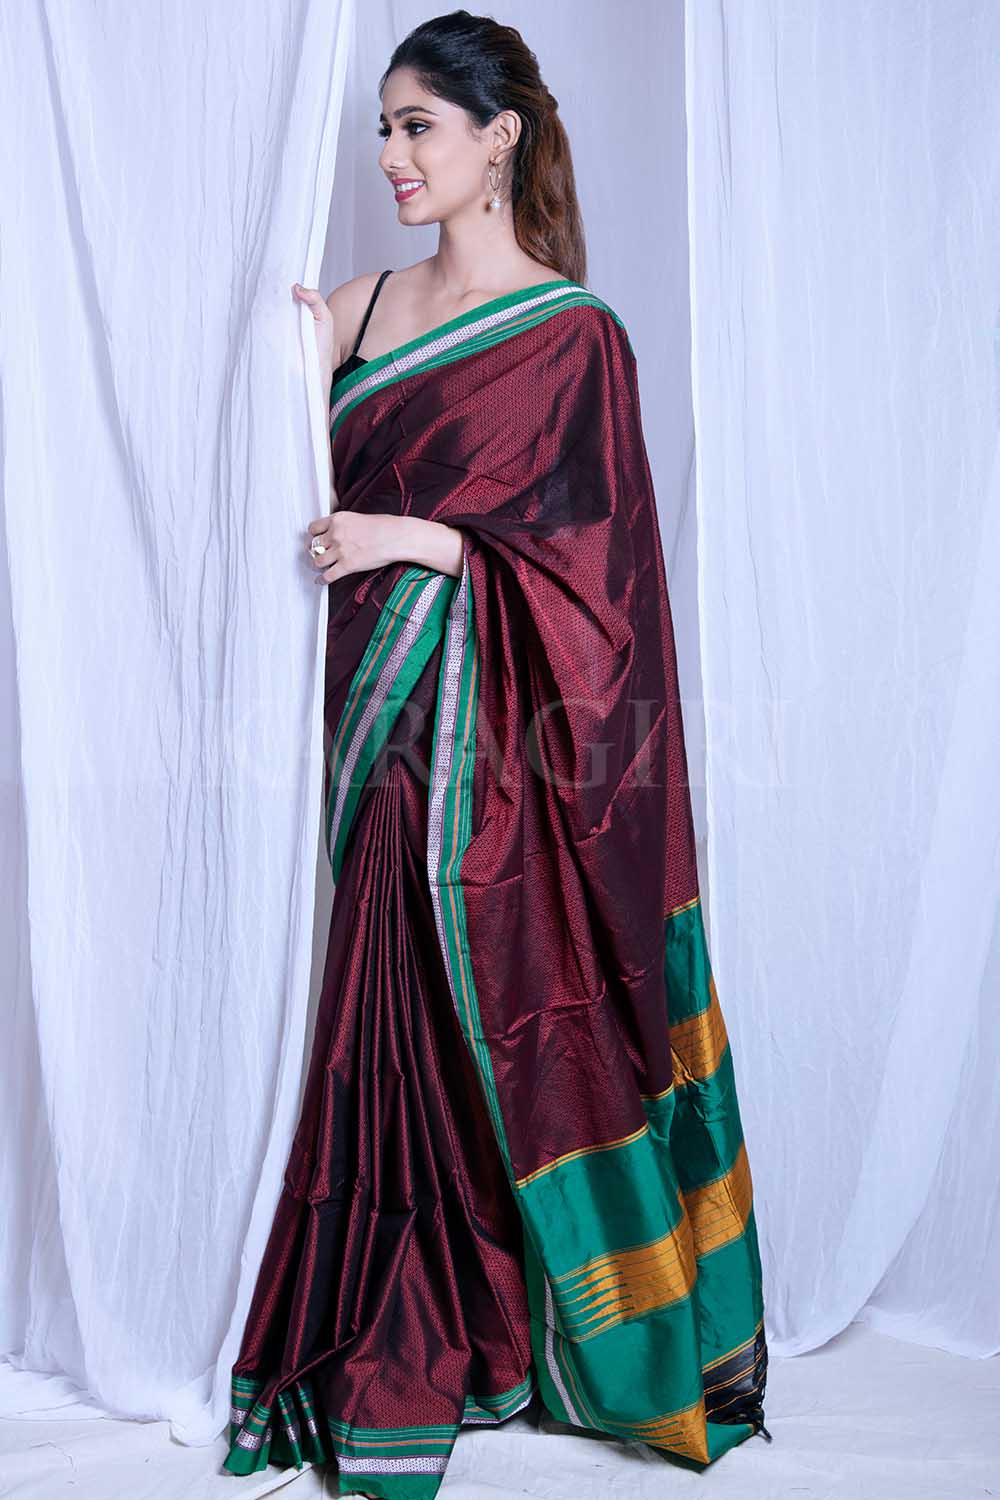 Photo: Sayali Sanjeev looks ravishing in THIS multi-coloured saree